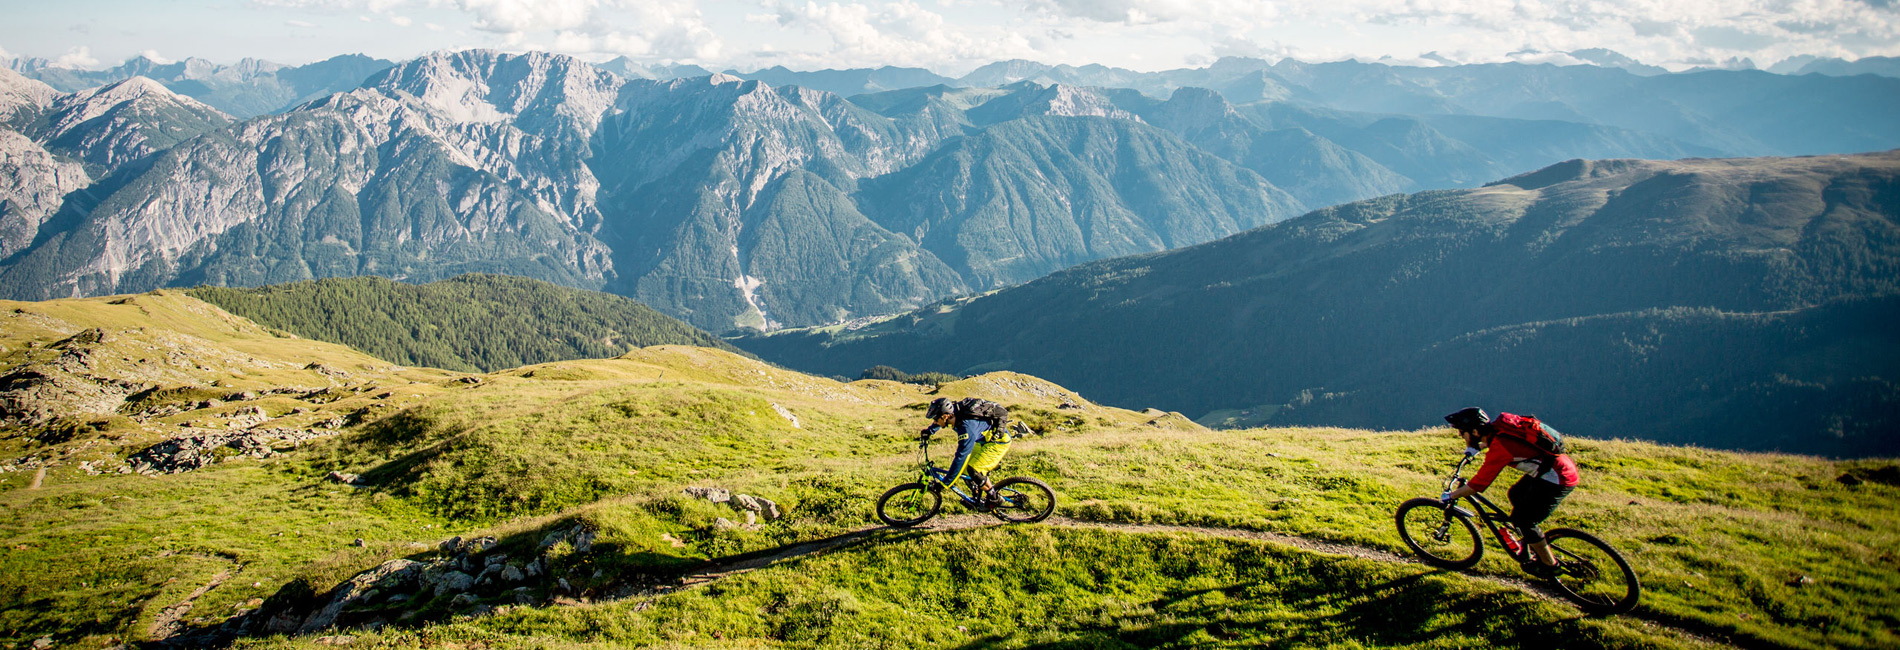 Peter-Sagan-Trail | Singletrail im Bikepark Lienz | Osttirol